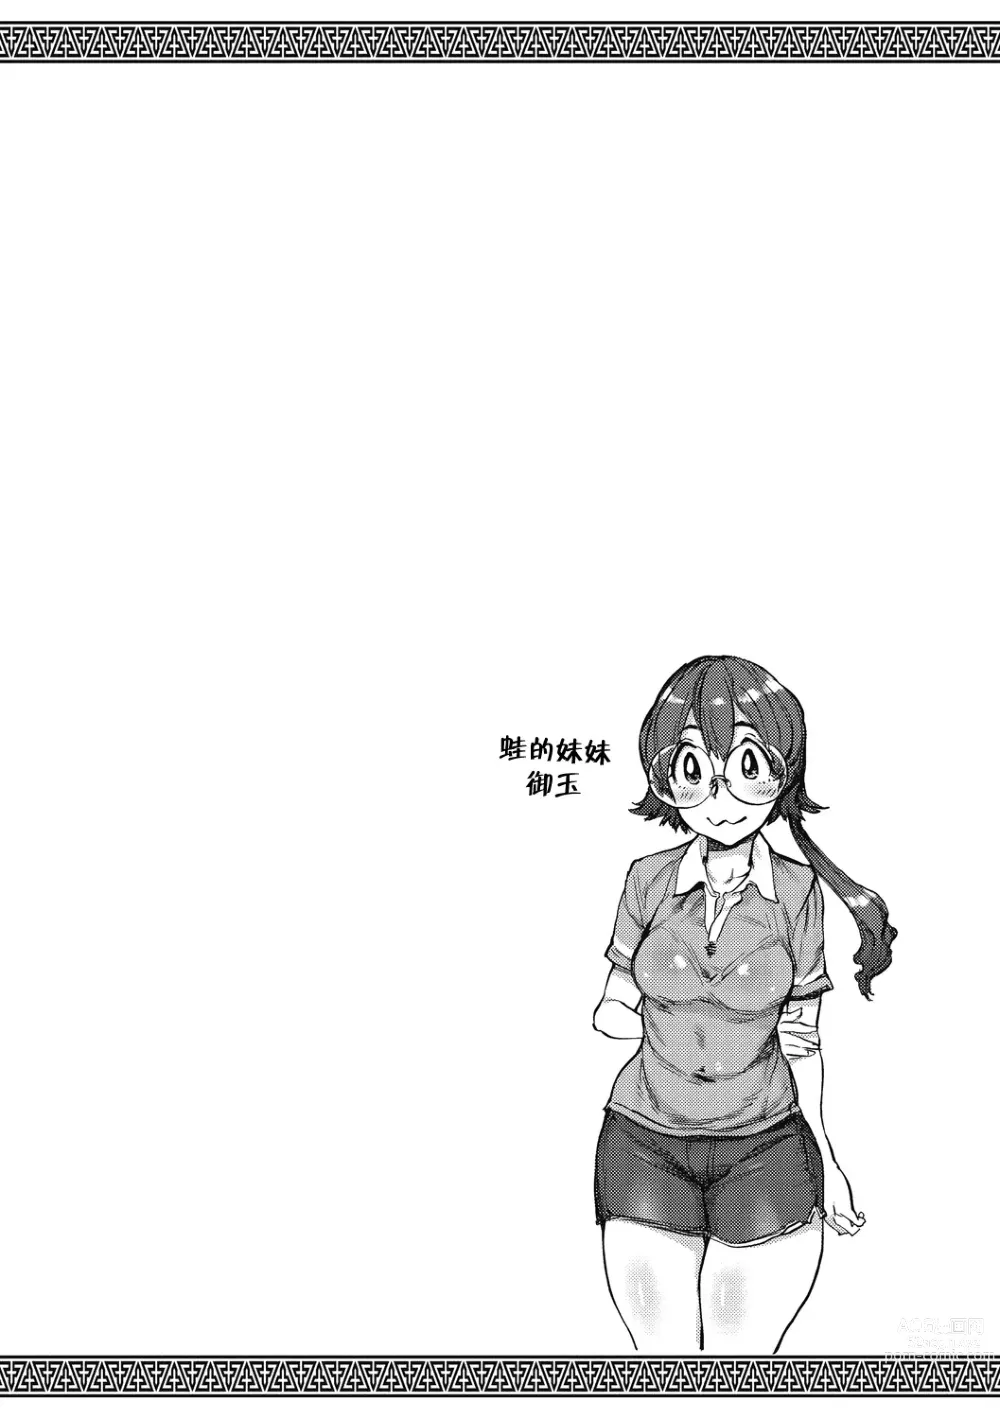 Page 222 of manga Oumagatoki - Ishu Konin Roman Tan -